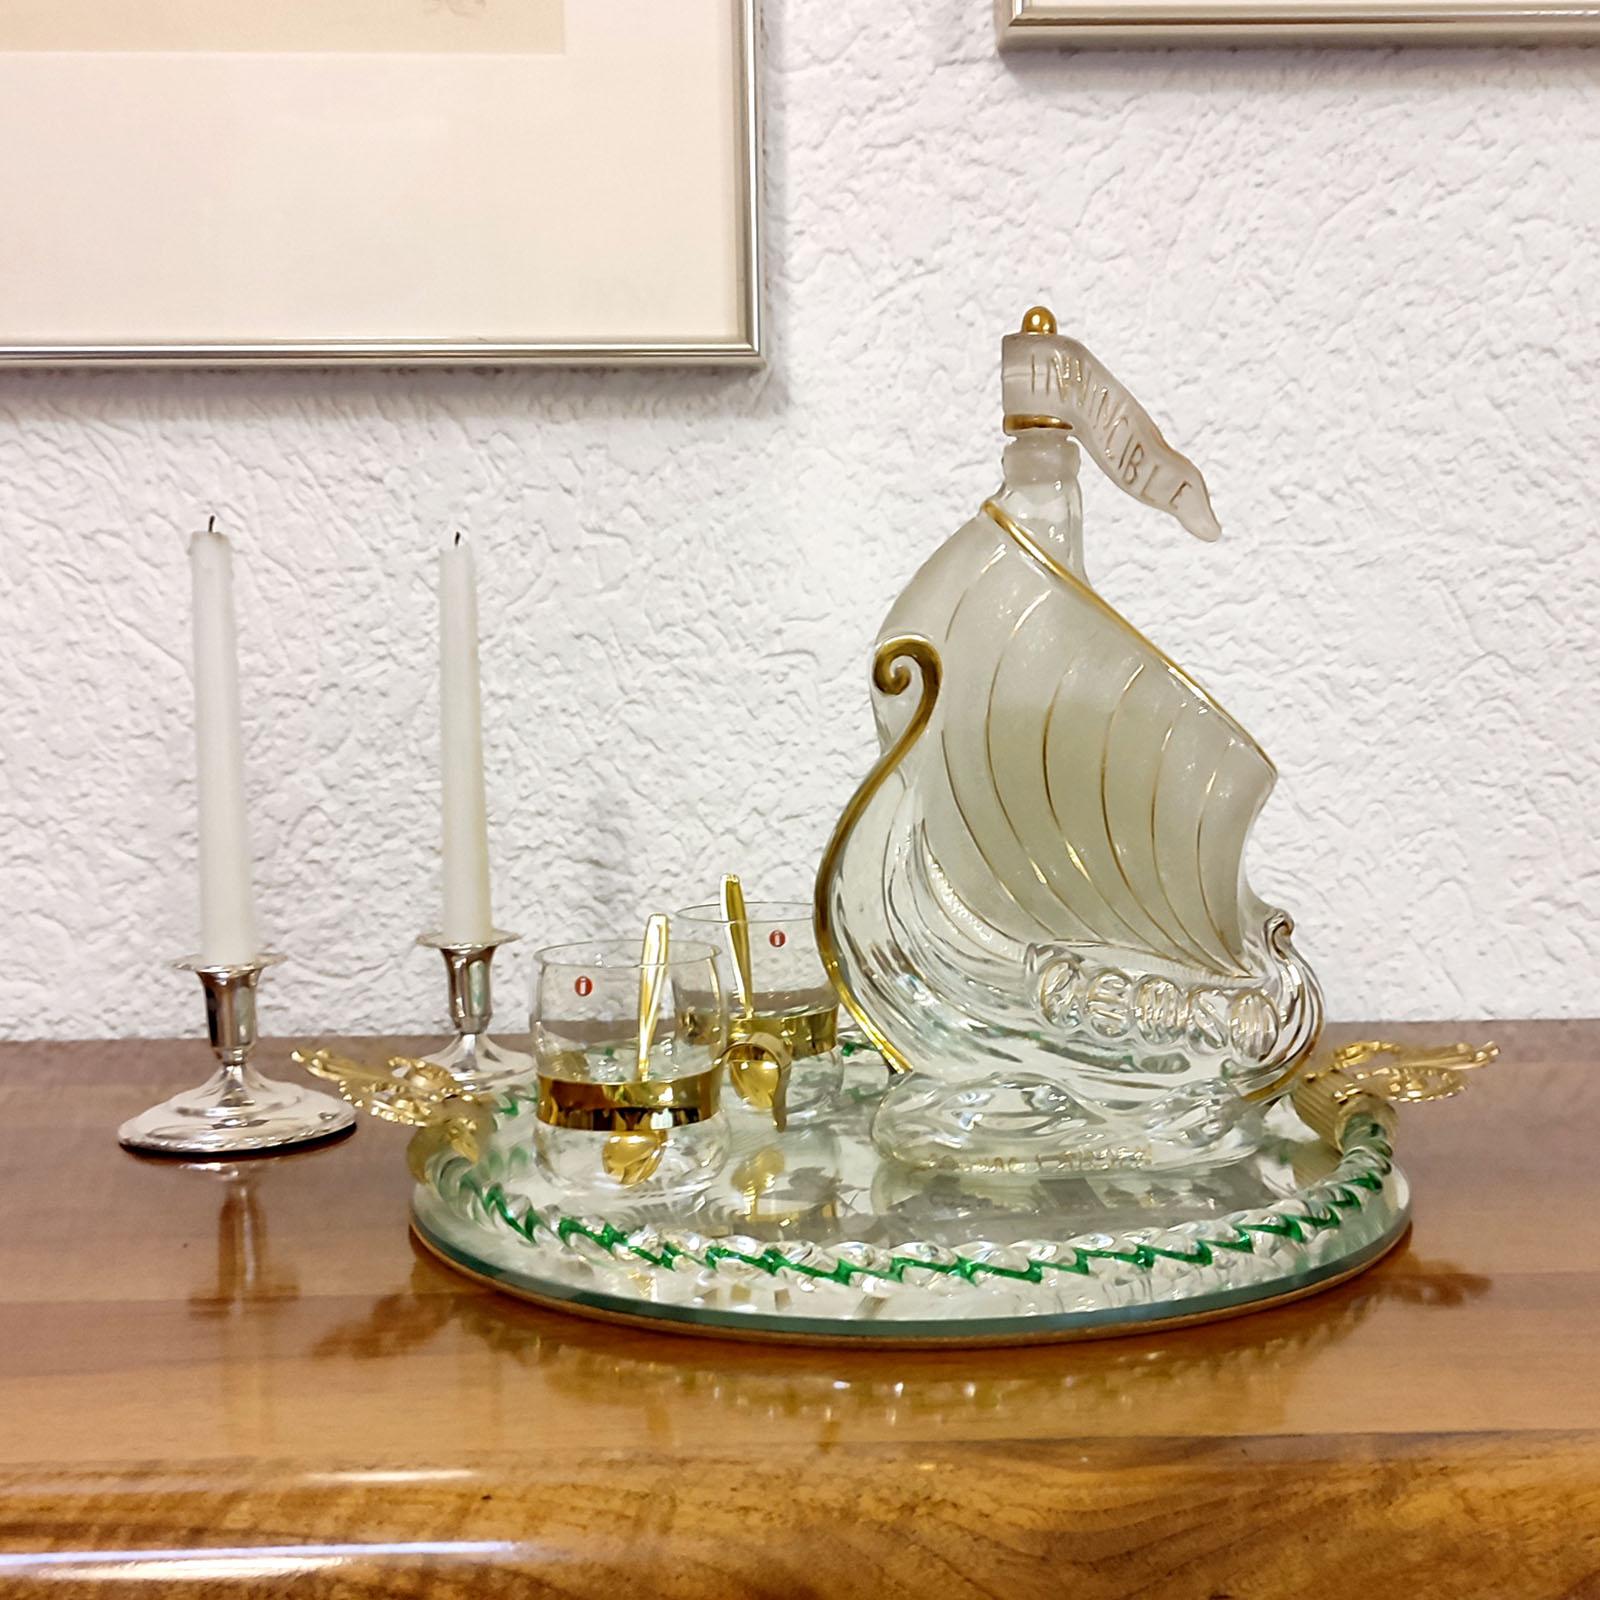 Sehr attraktive Cognac-Karaffe mit Stopfen in Form eines Wikingerschiffs. Aus klarem Glas, mattiertem Glas und goldenen Verzierungen, die die Form des Schiffes hervorheben. Ausgezeichneter gebrauchter Zustand.
Abmessungen: 20 x 7,5 x 31 cm (8x3x12